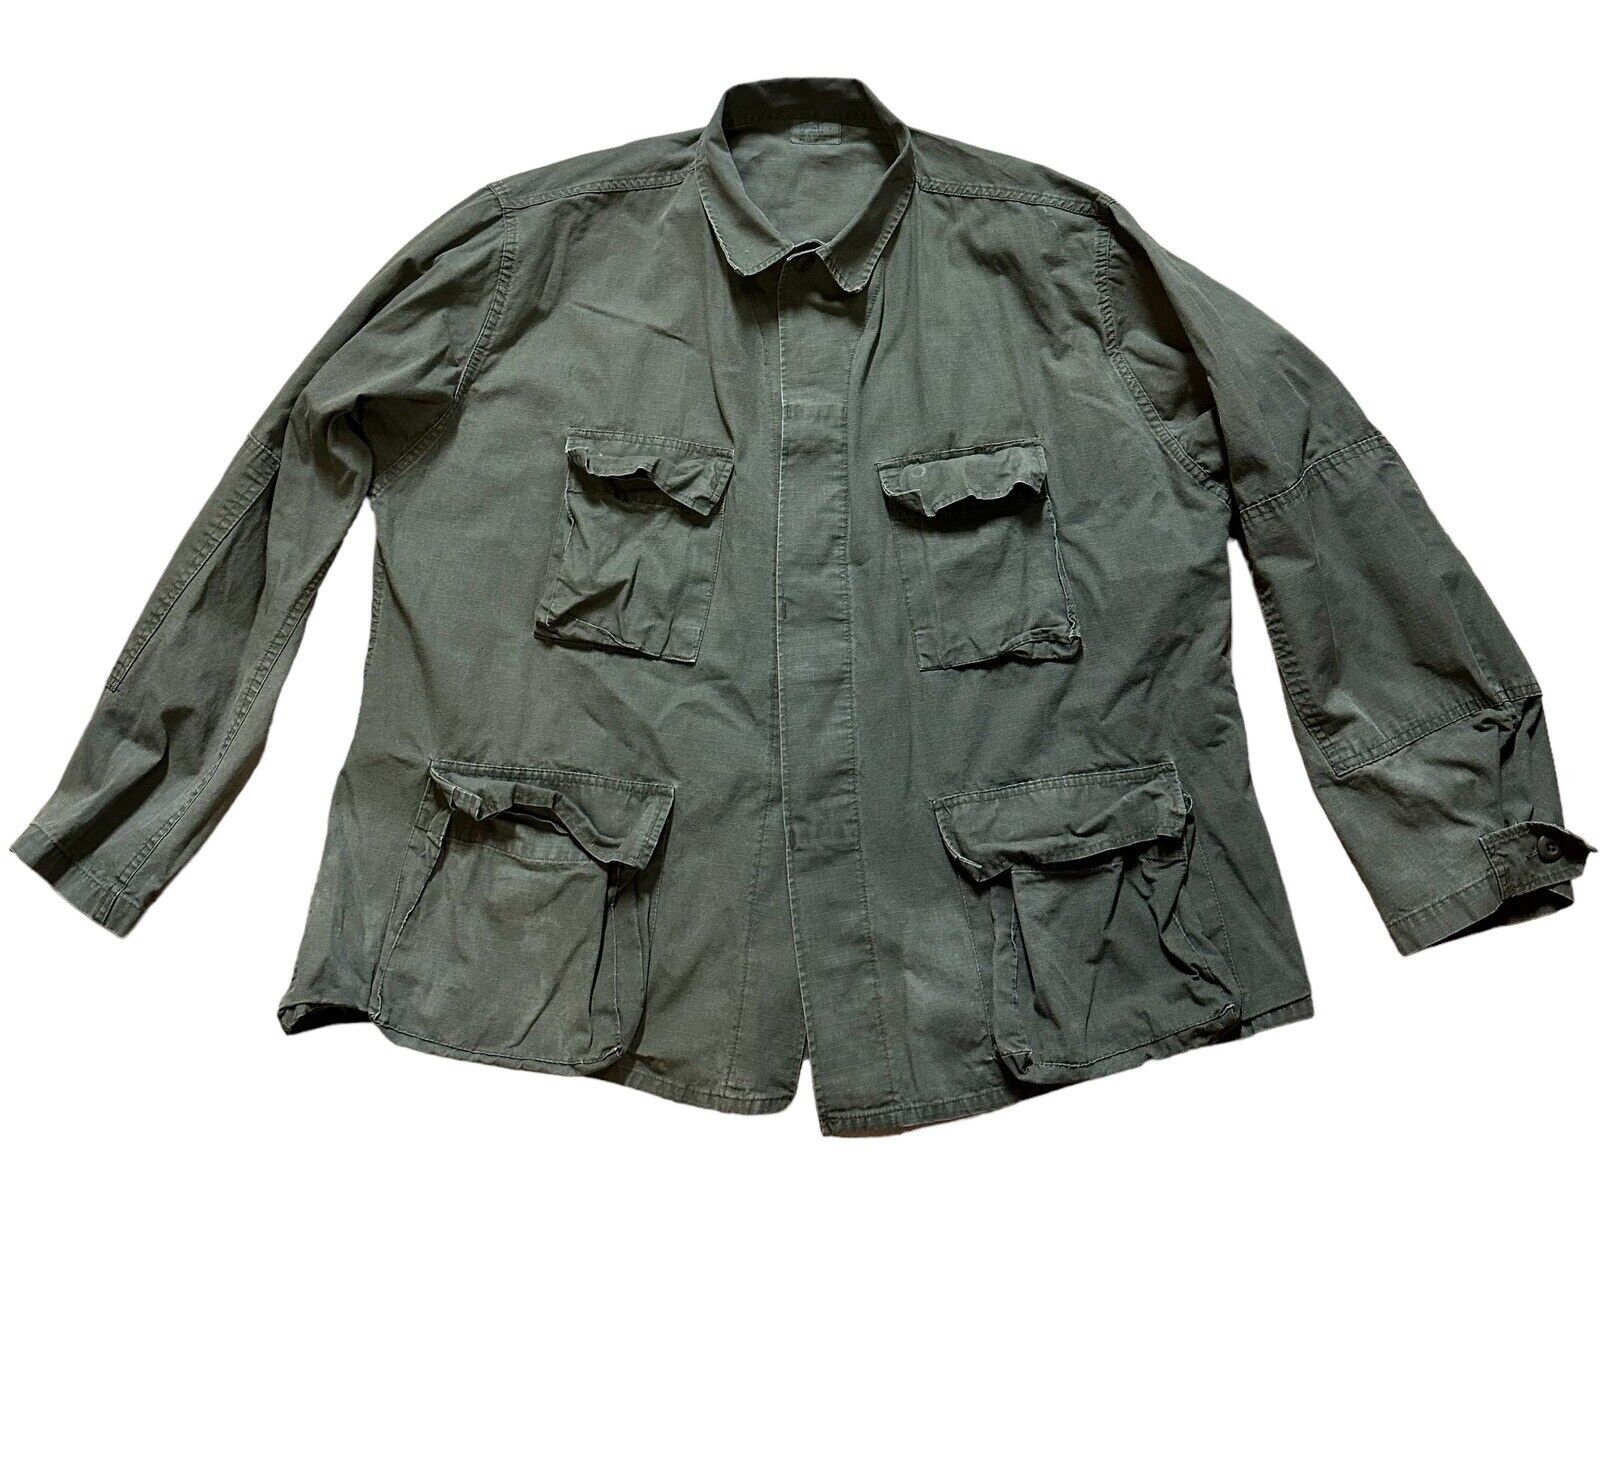 VTG Army Jacket Coat Mens Size XL-Regular Stock No. 8415-01-084-1657 Coat Combat